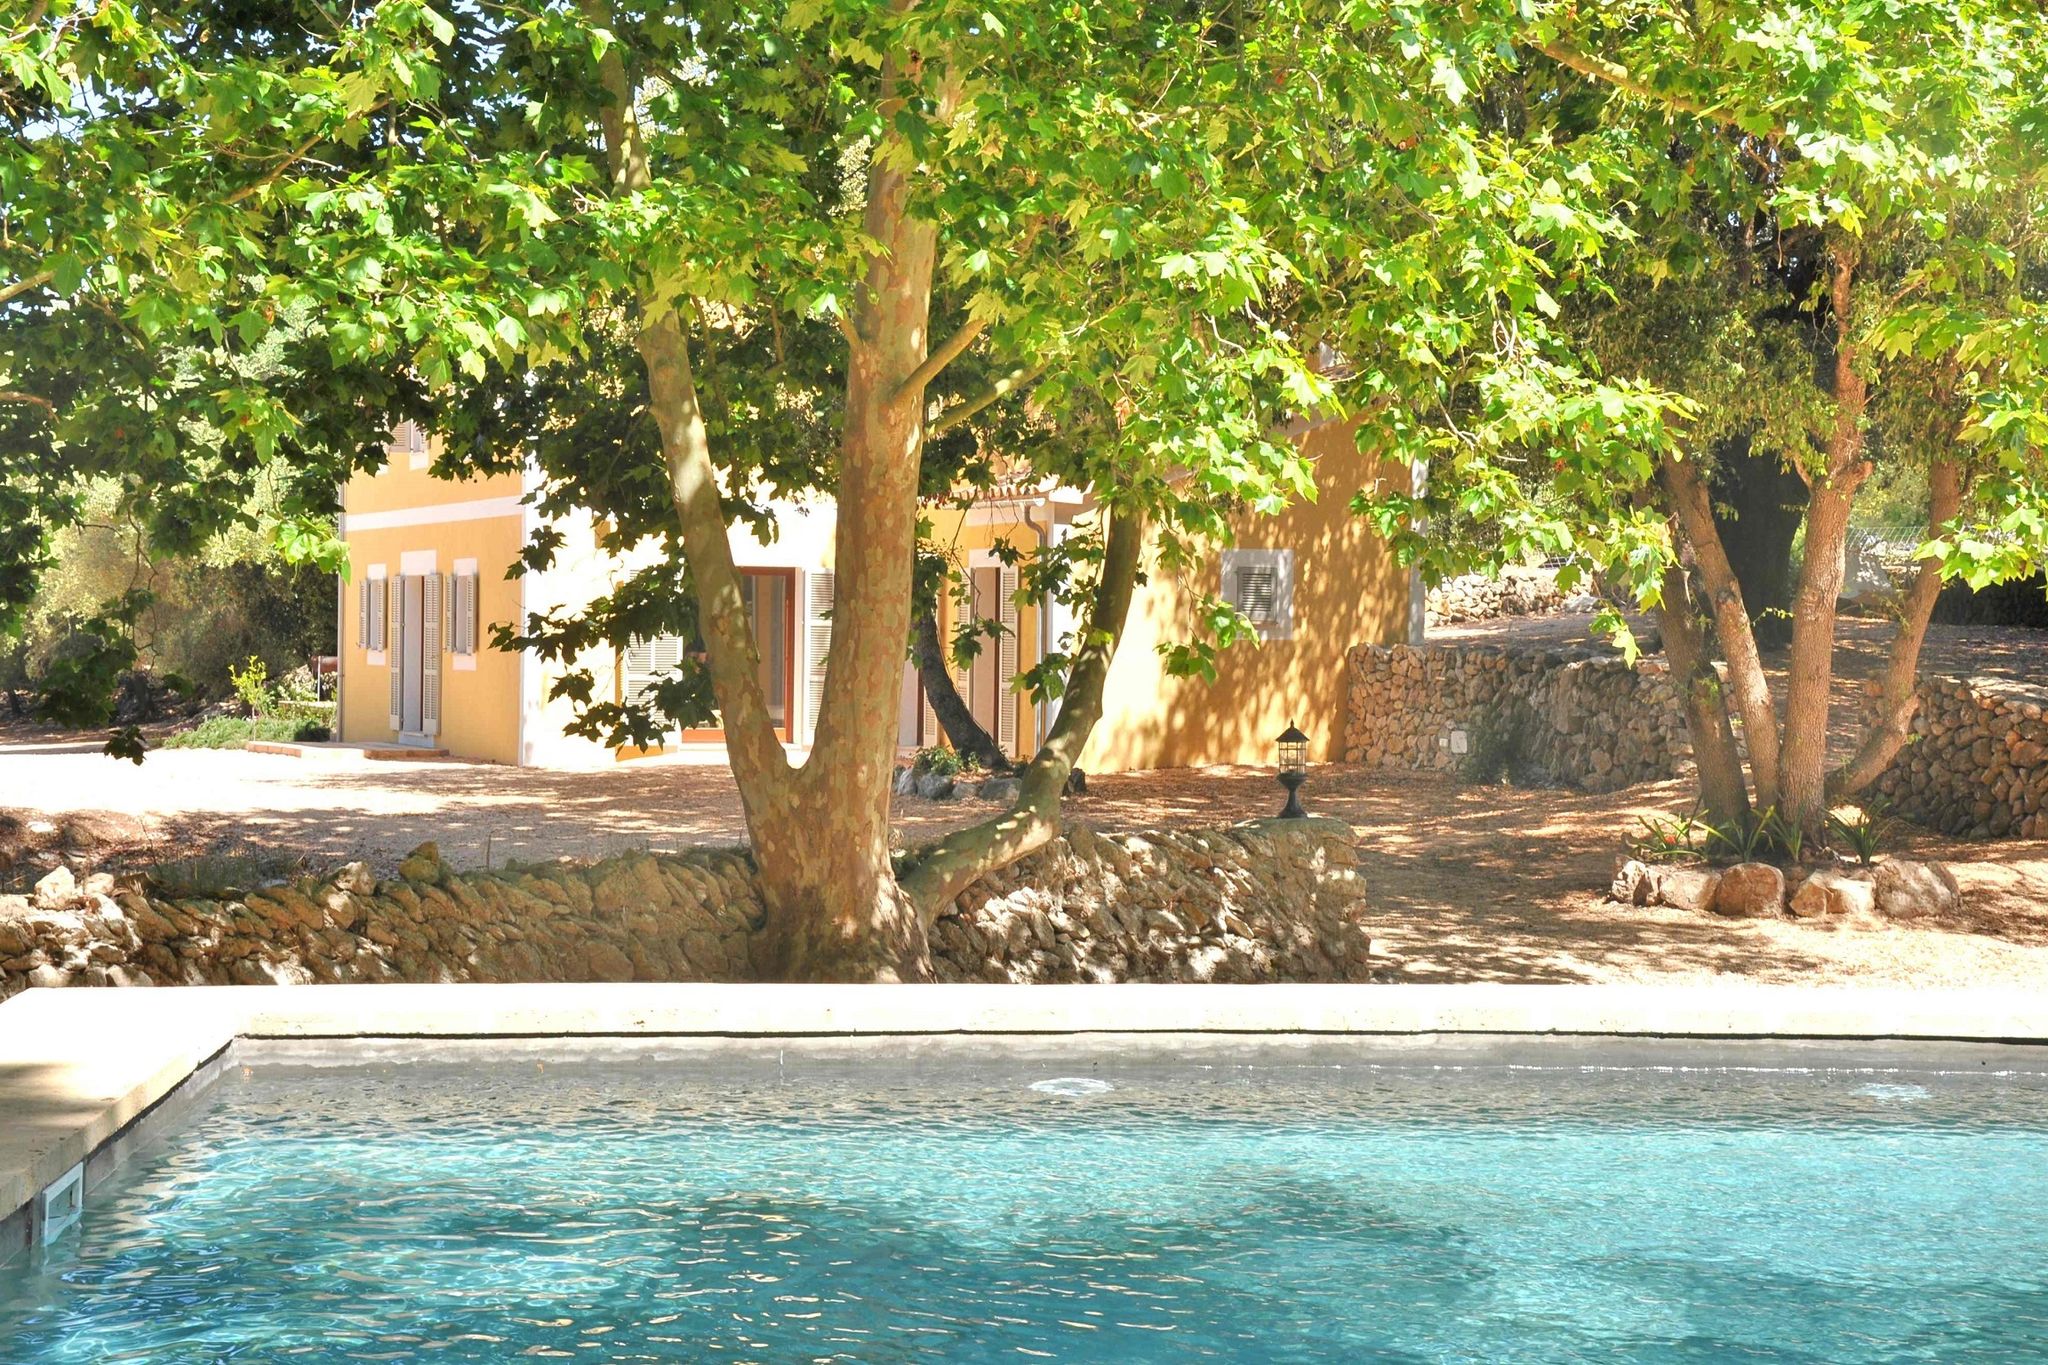 Zeer rustig gelegen luxe finca met privé zwembad op 3, 5 km van Artà centrum